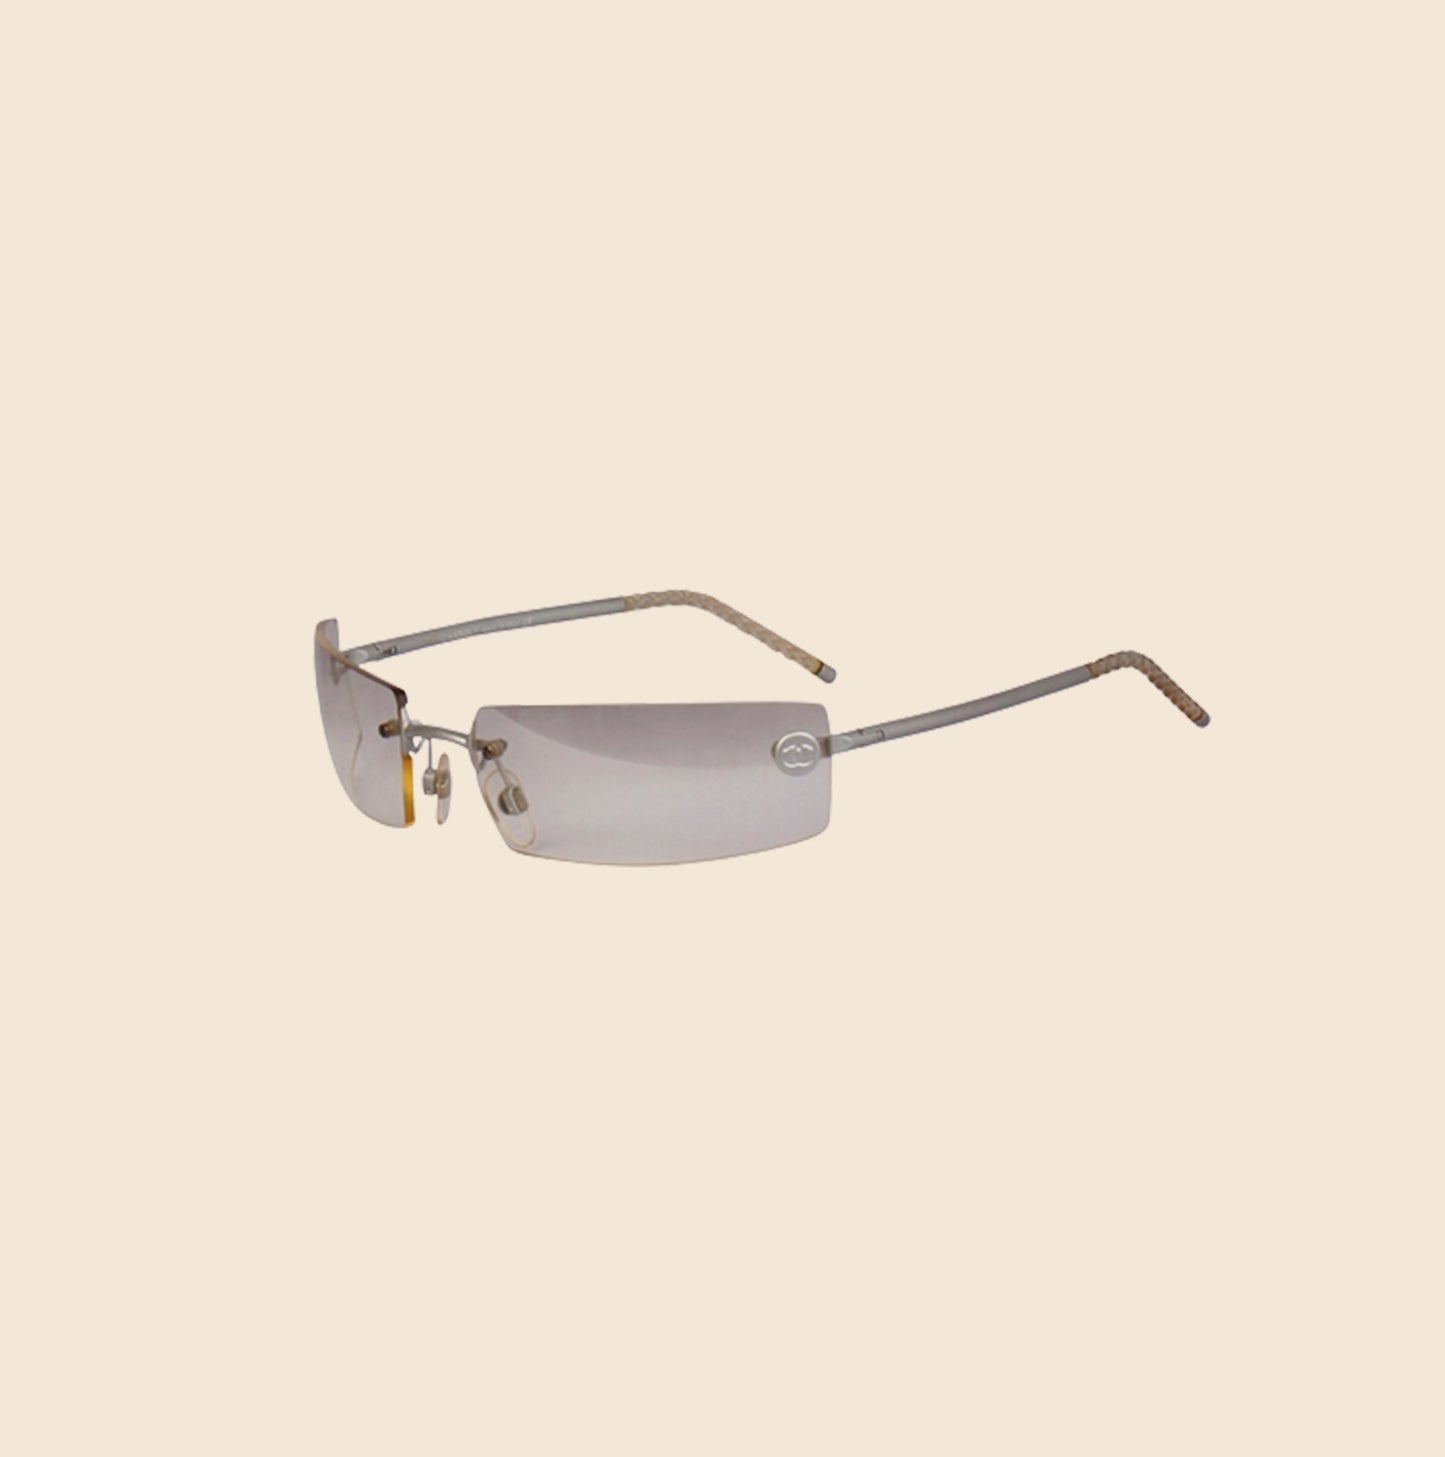 100% Authentic Chanel CC Emblem Sunglasses Rimless Clear No Prescription